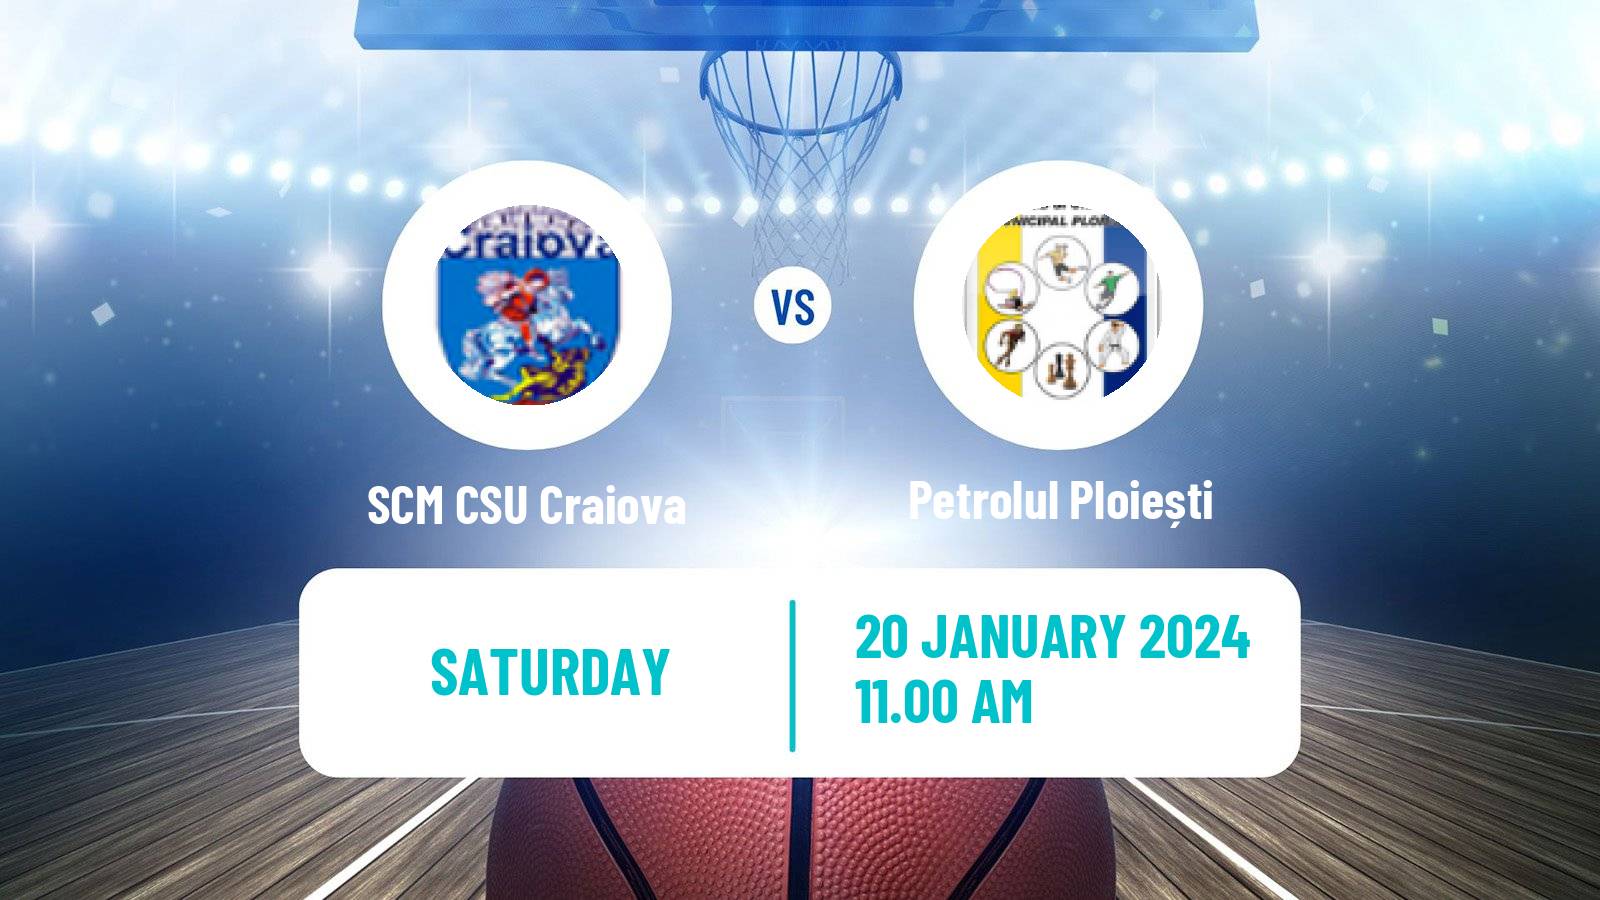 Basketball Romanian Divizia A Basketball SCM CSU Craiova - Petrolul Ploiești